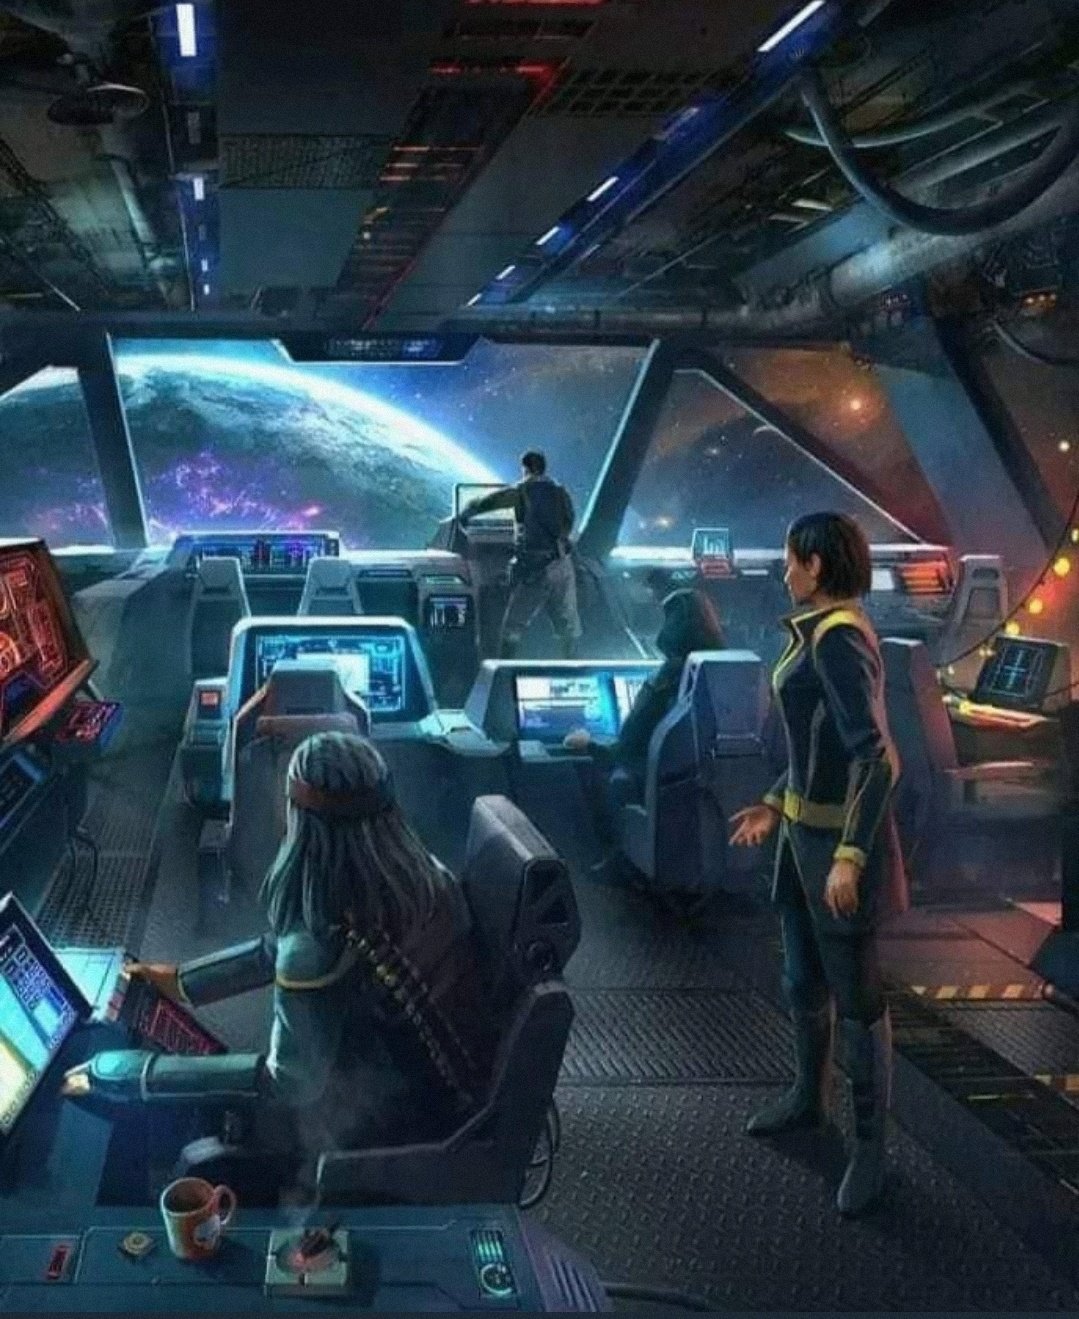 Sci fi games. Космический корабль внутри. Космические корабли фантастика. Космический корабль будущего внутри. Фантастический космический корабль внутри.